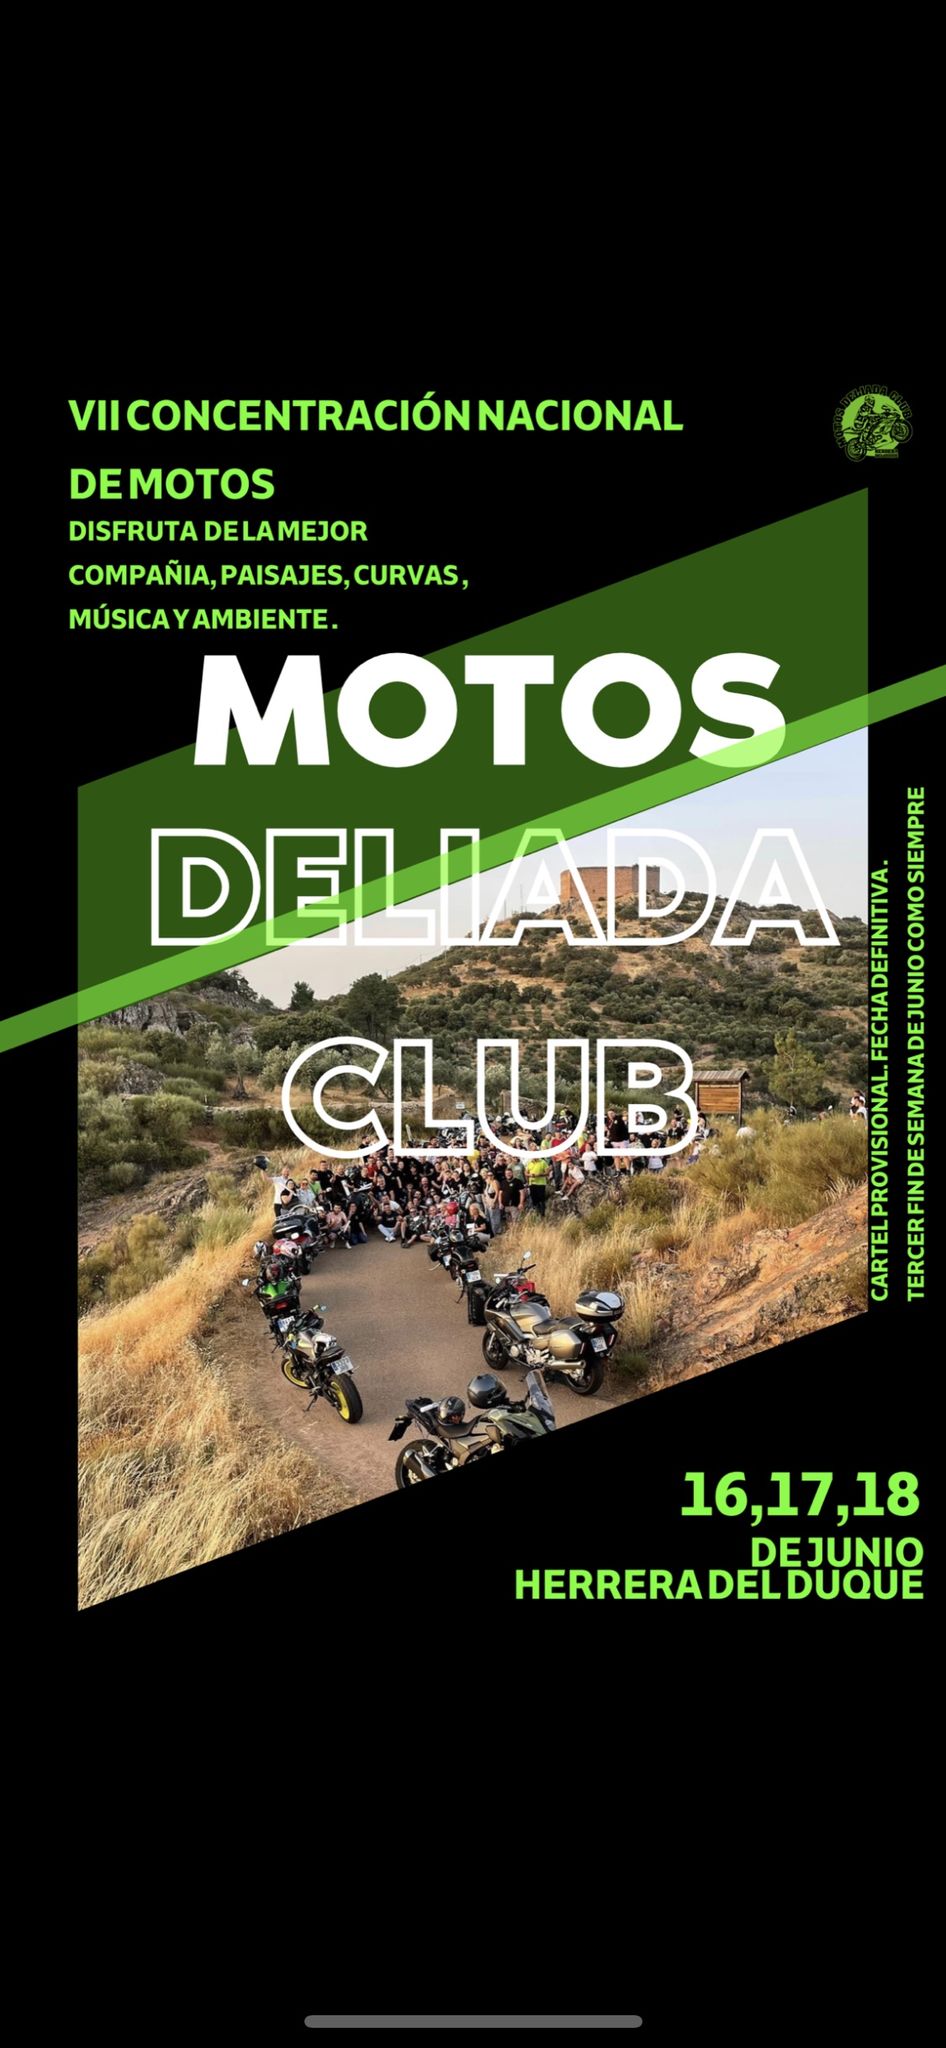 VIII Concentración de Motos Deliada Club